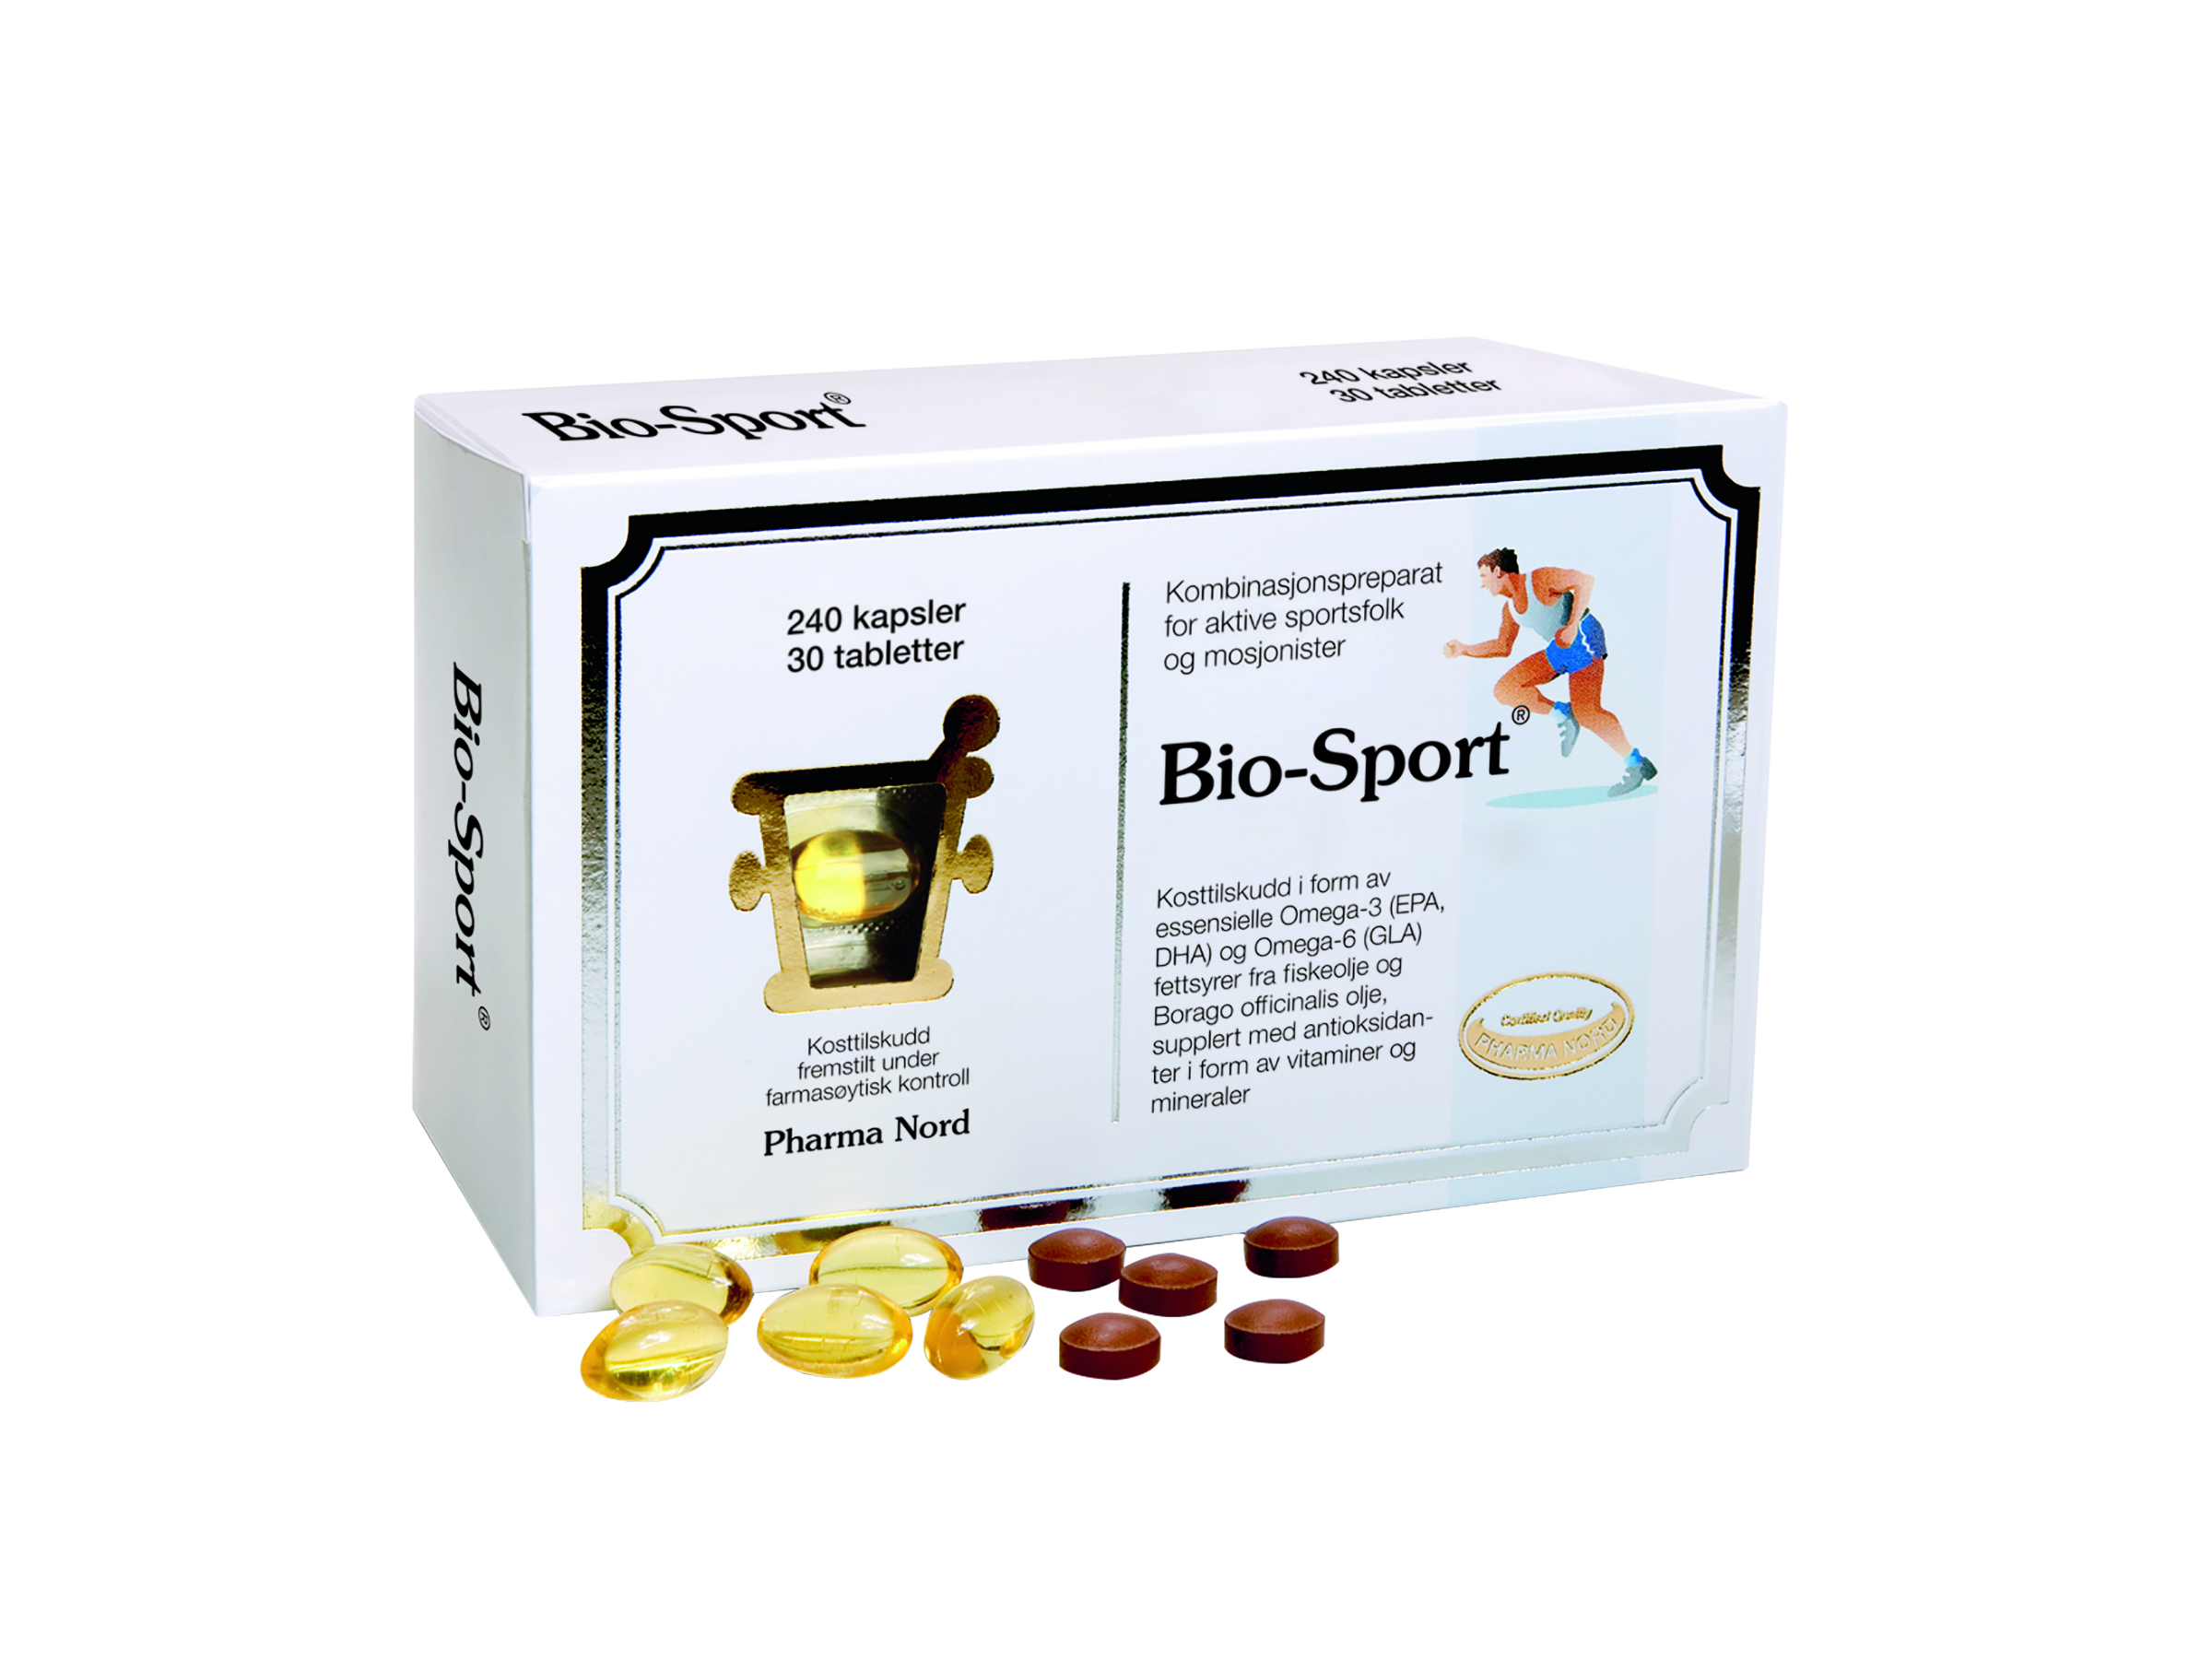 Pharma Nord Bio-sport, 240 kapsler +30 tabletter